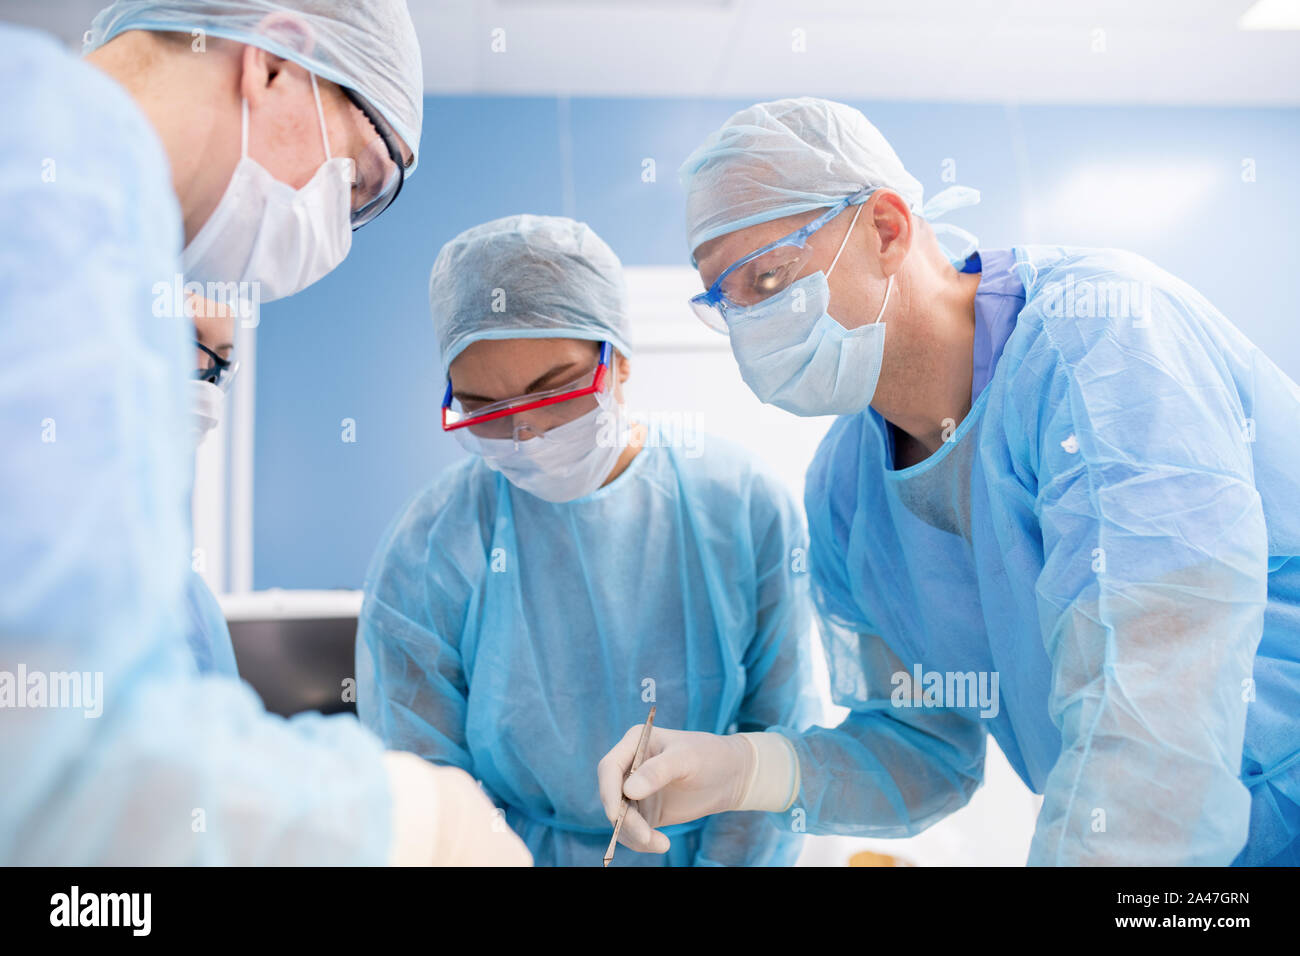 Gruppe von Chirurgen in Masken, Handschuhe und Arbeitskleidung Biegung über die Patienten Stockfoto